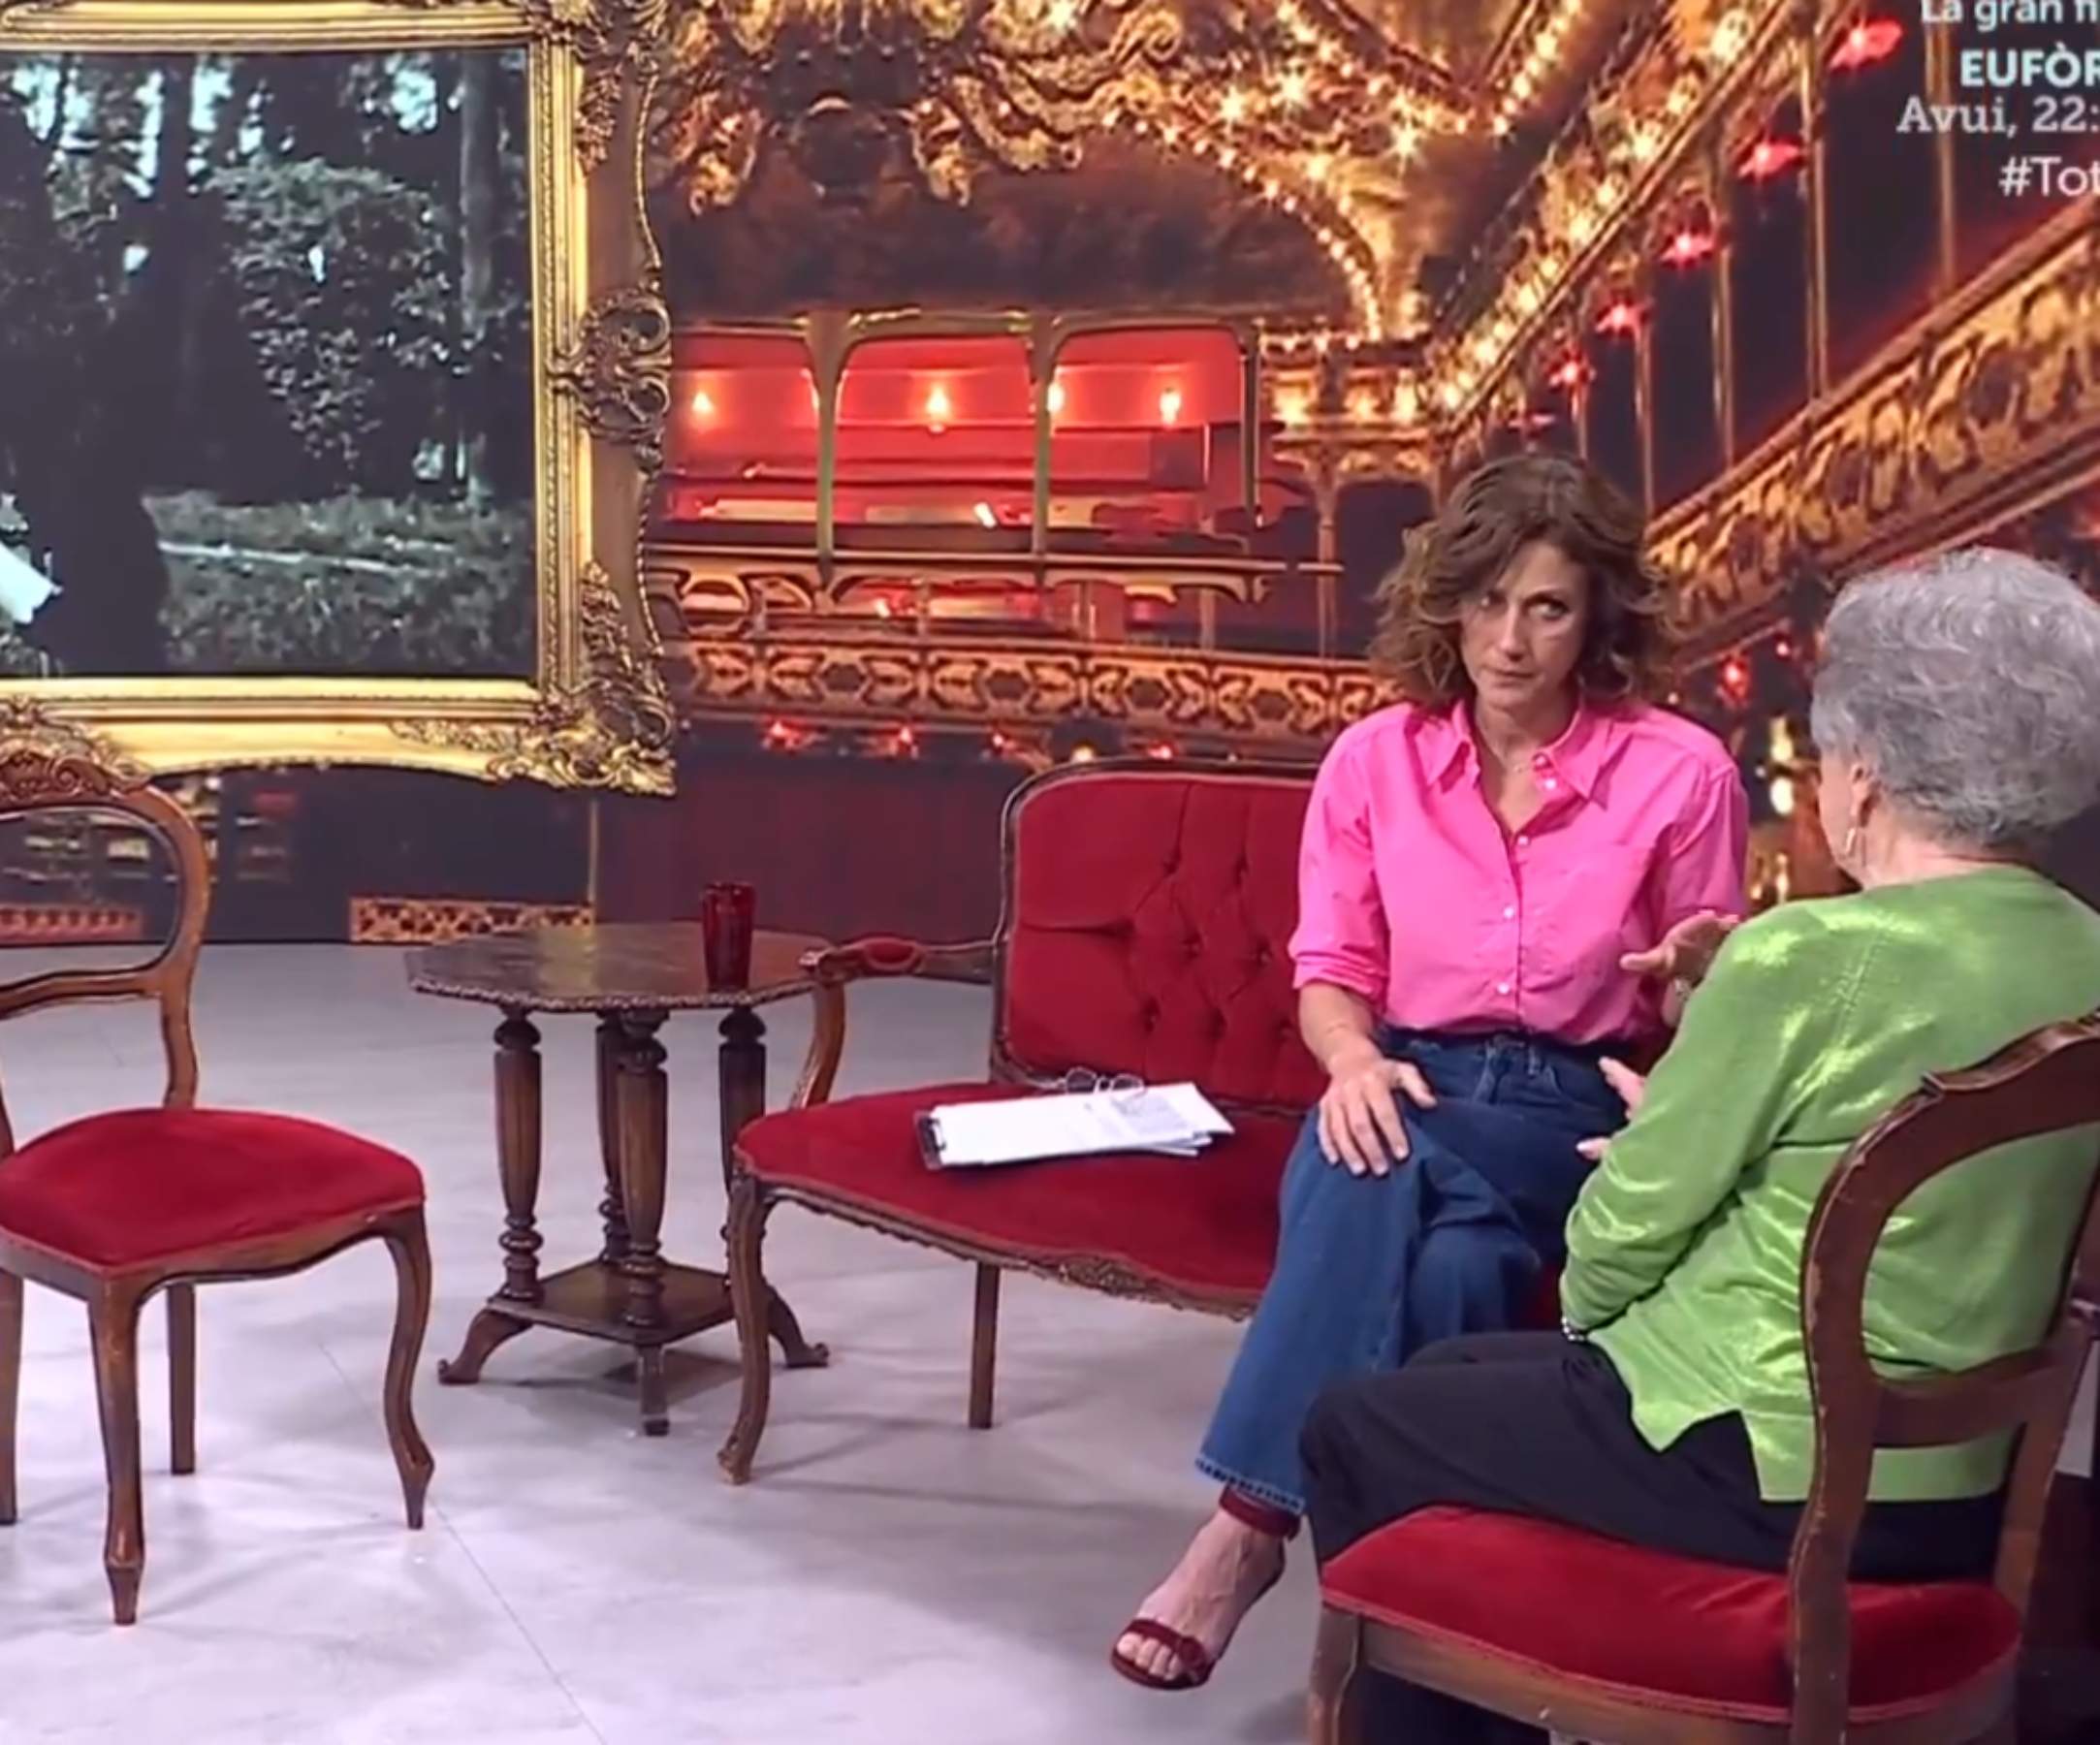 La emotiva historia de amor narrada en TV3: "Lo conocí con 73 años, nunca es tarde"